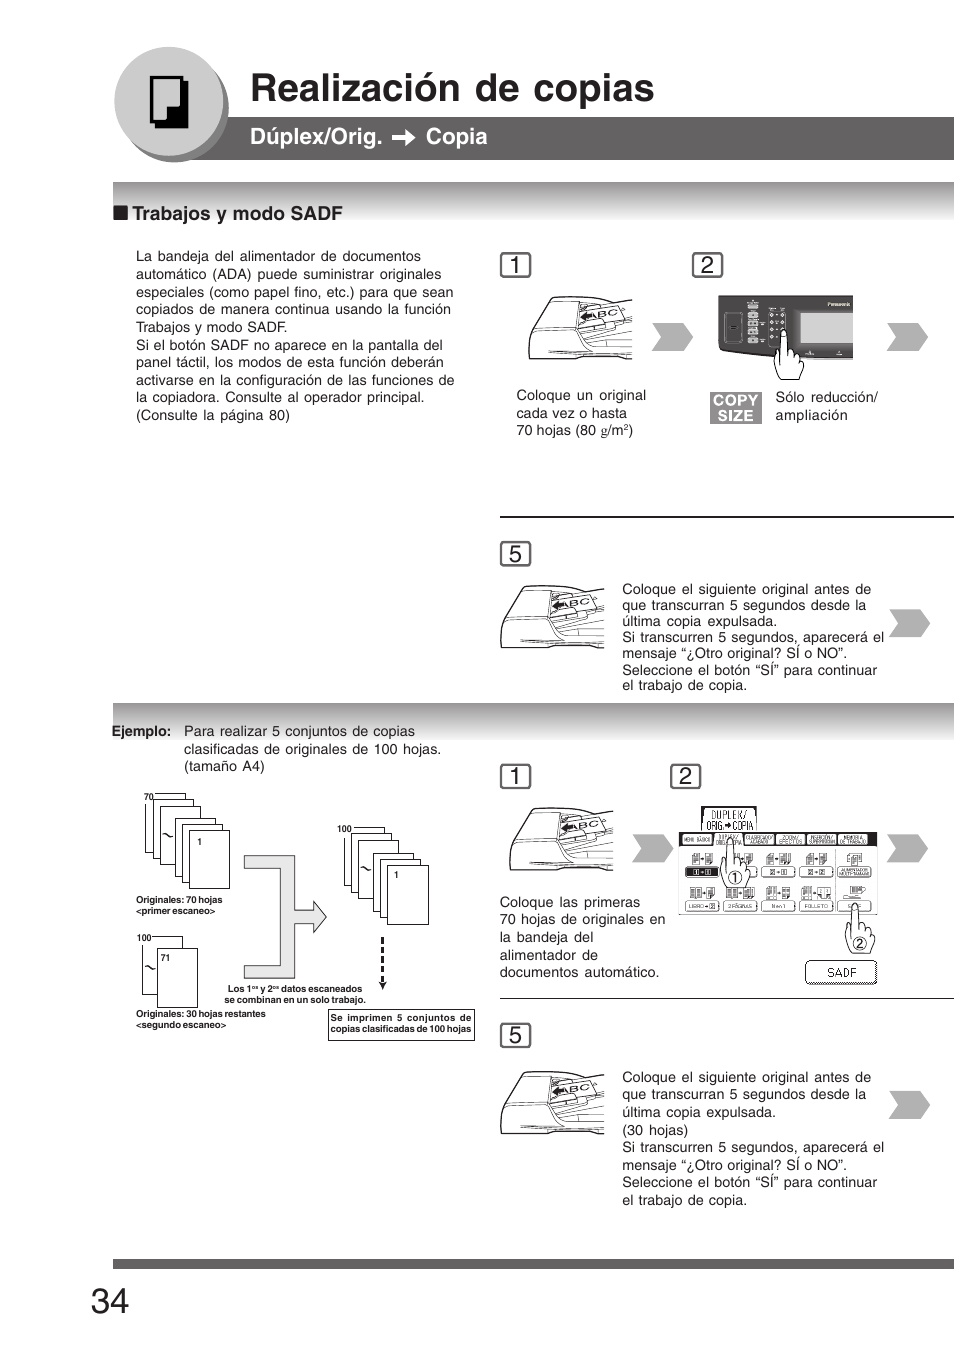 Trabajos y modo sadf, Realización de copias, Dúplex/orig. copia | Panasonic DP8035 Manual del usuario | Página 34 / 92